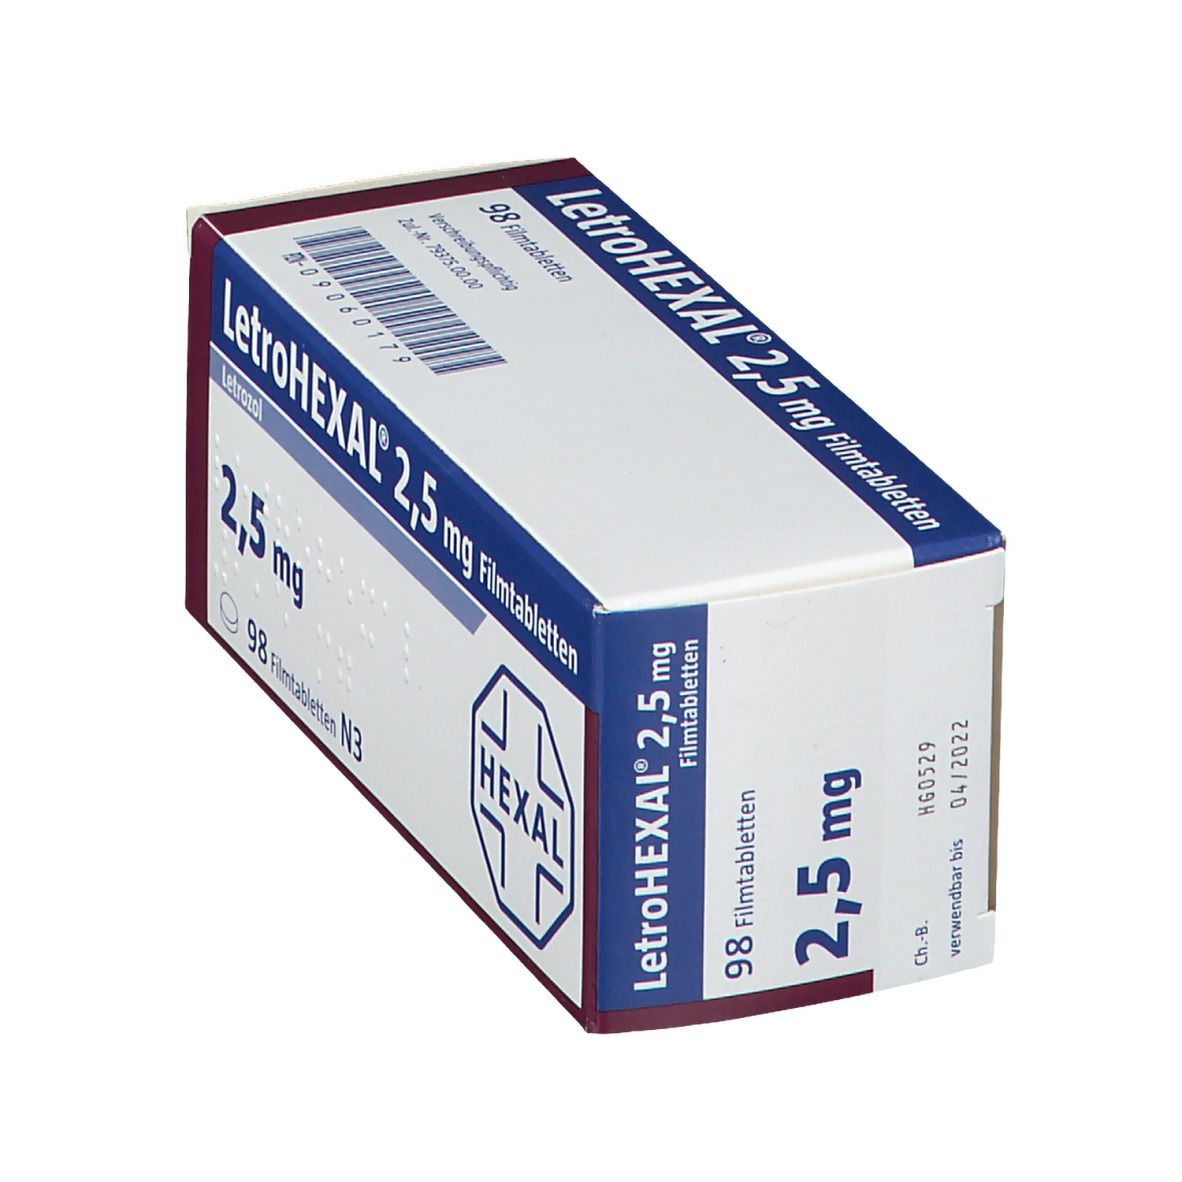 LetroHEXAL® 2,5 mg